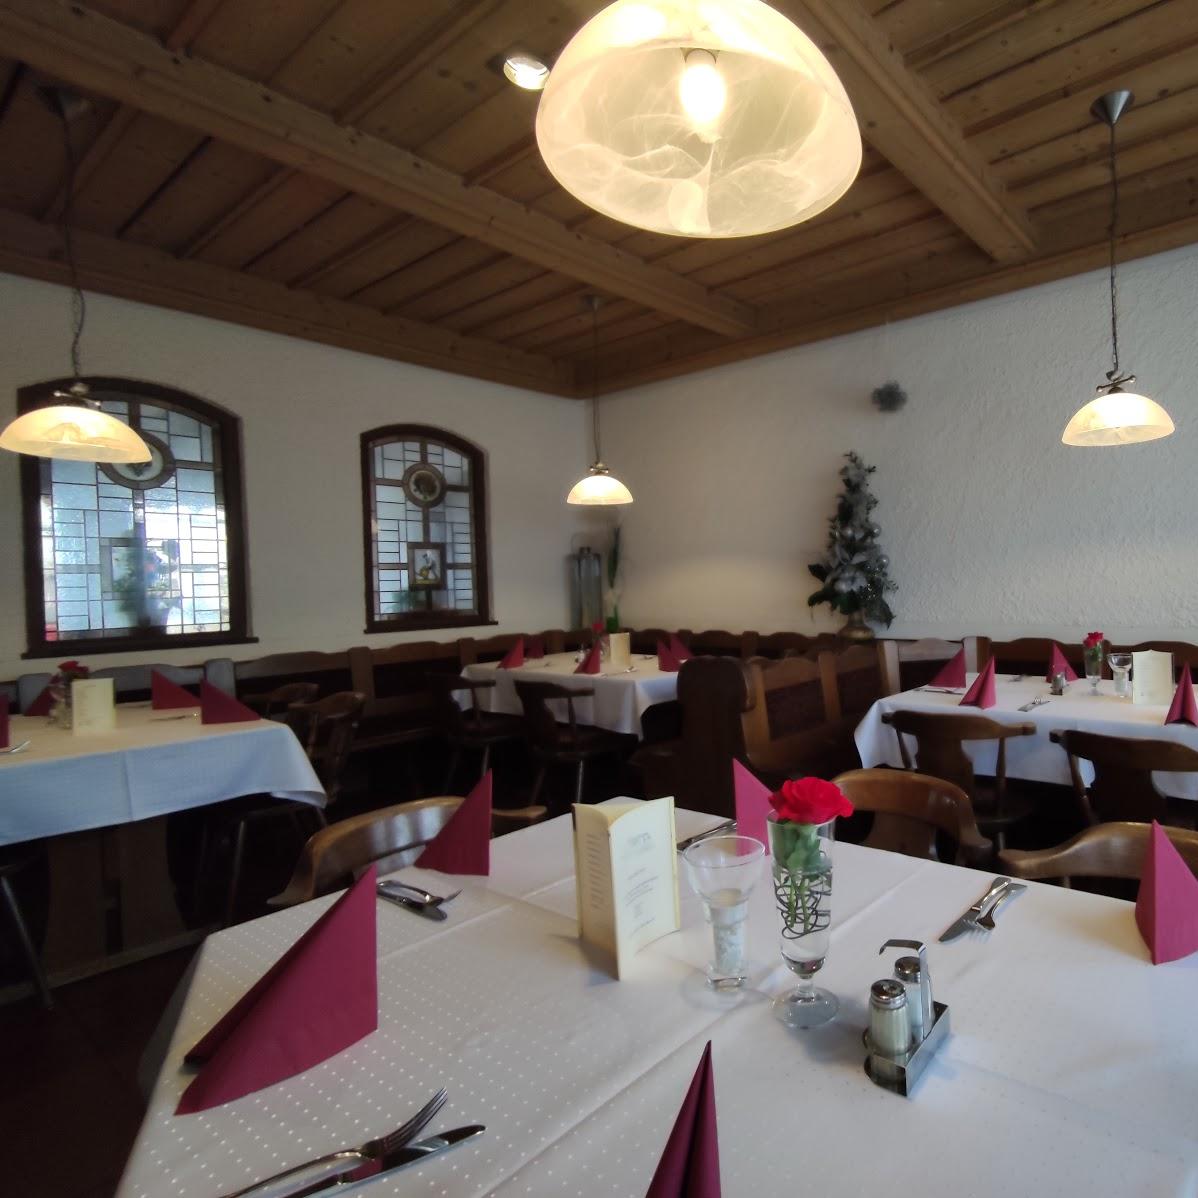 Restaurant "Gaststätte Metzger" in Friedberg